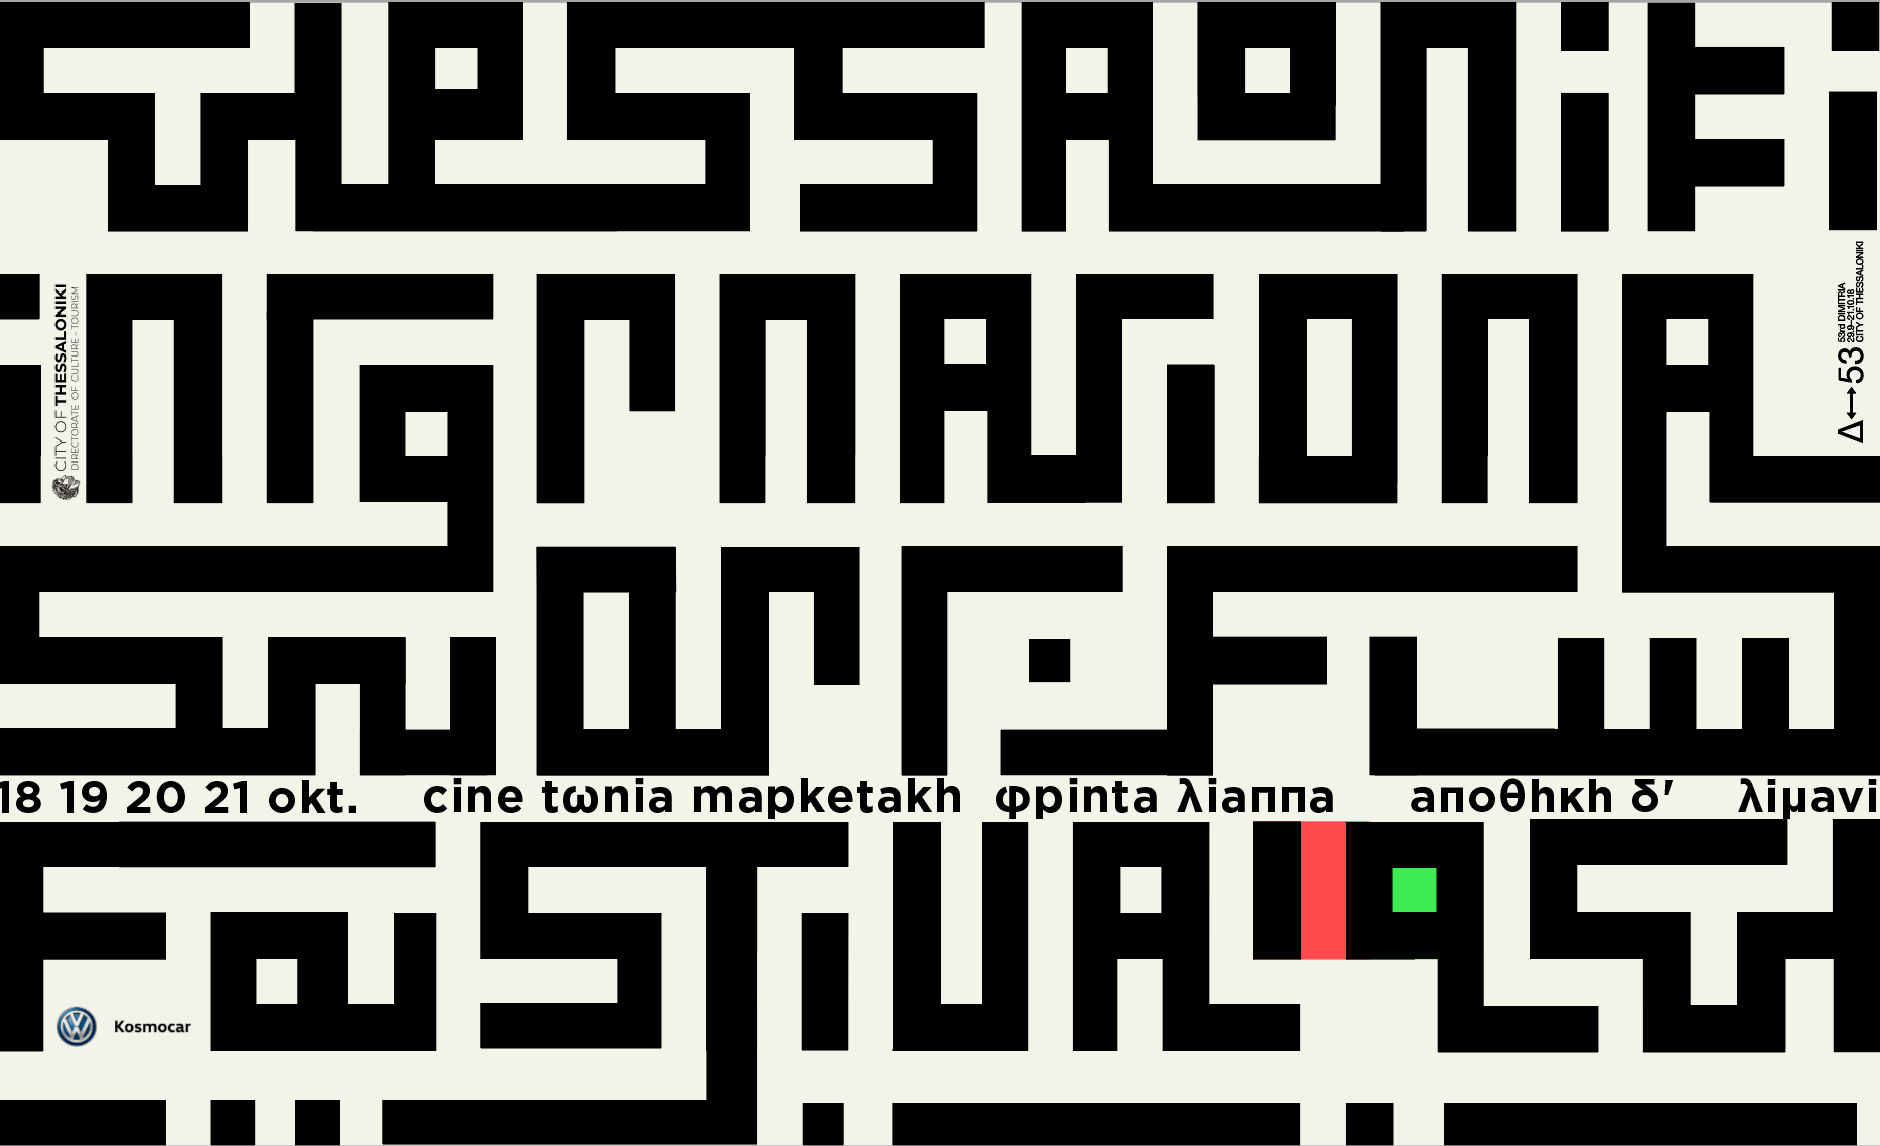 12ο Διεθνές Φεστιβάλ Ταινιών Μικρού Μήκους Θεσσαλονίκης, 18 – 21 Οκτωβρίου